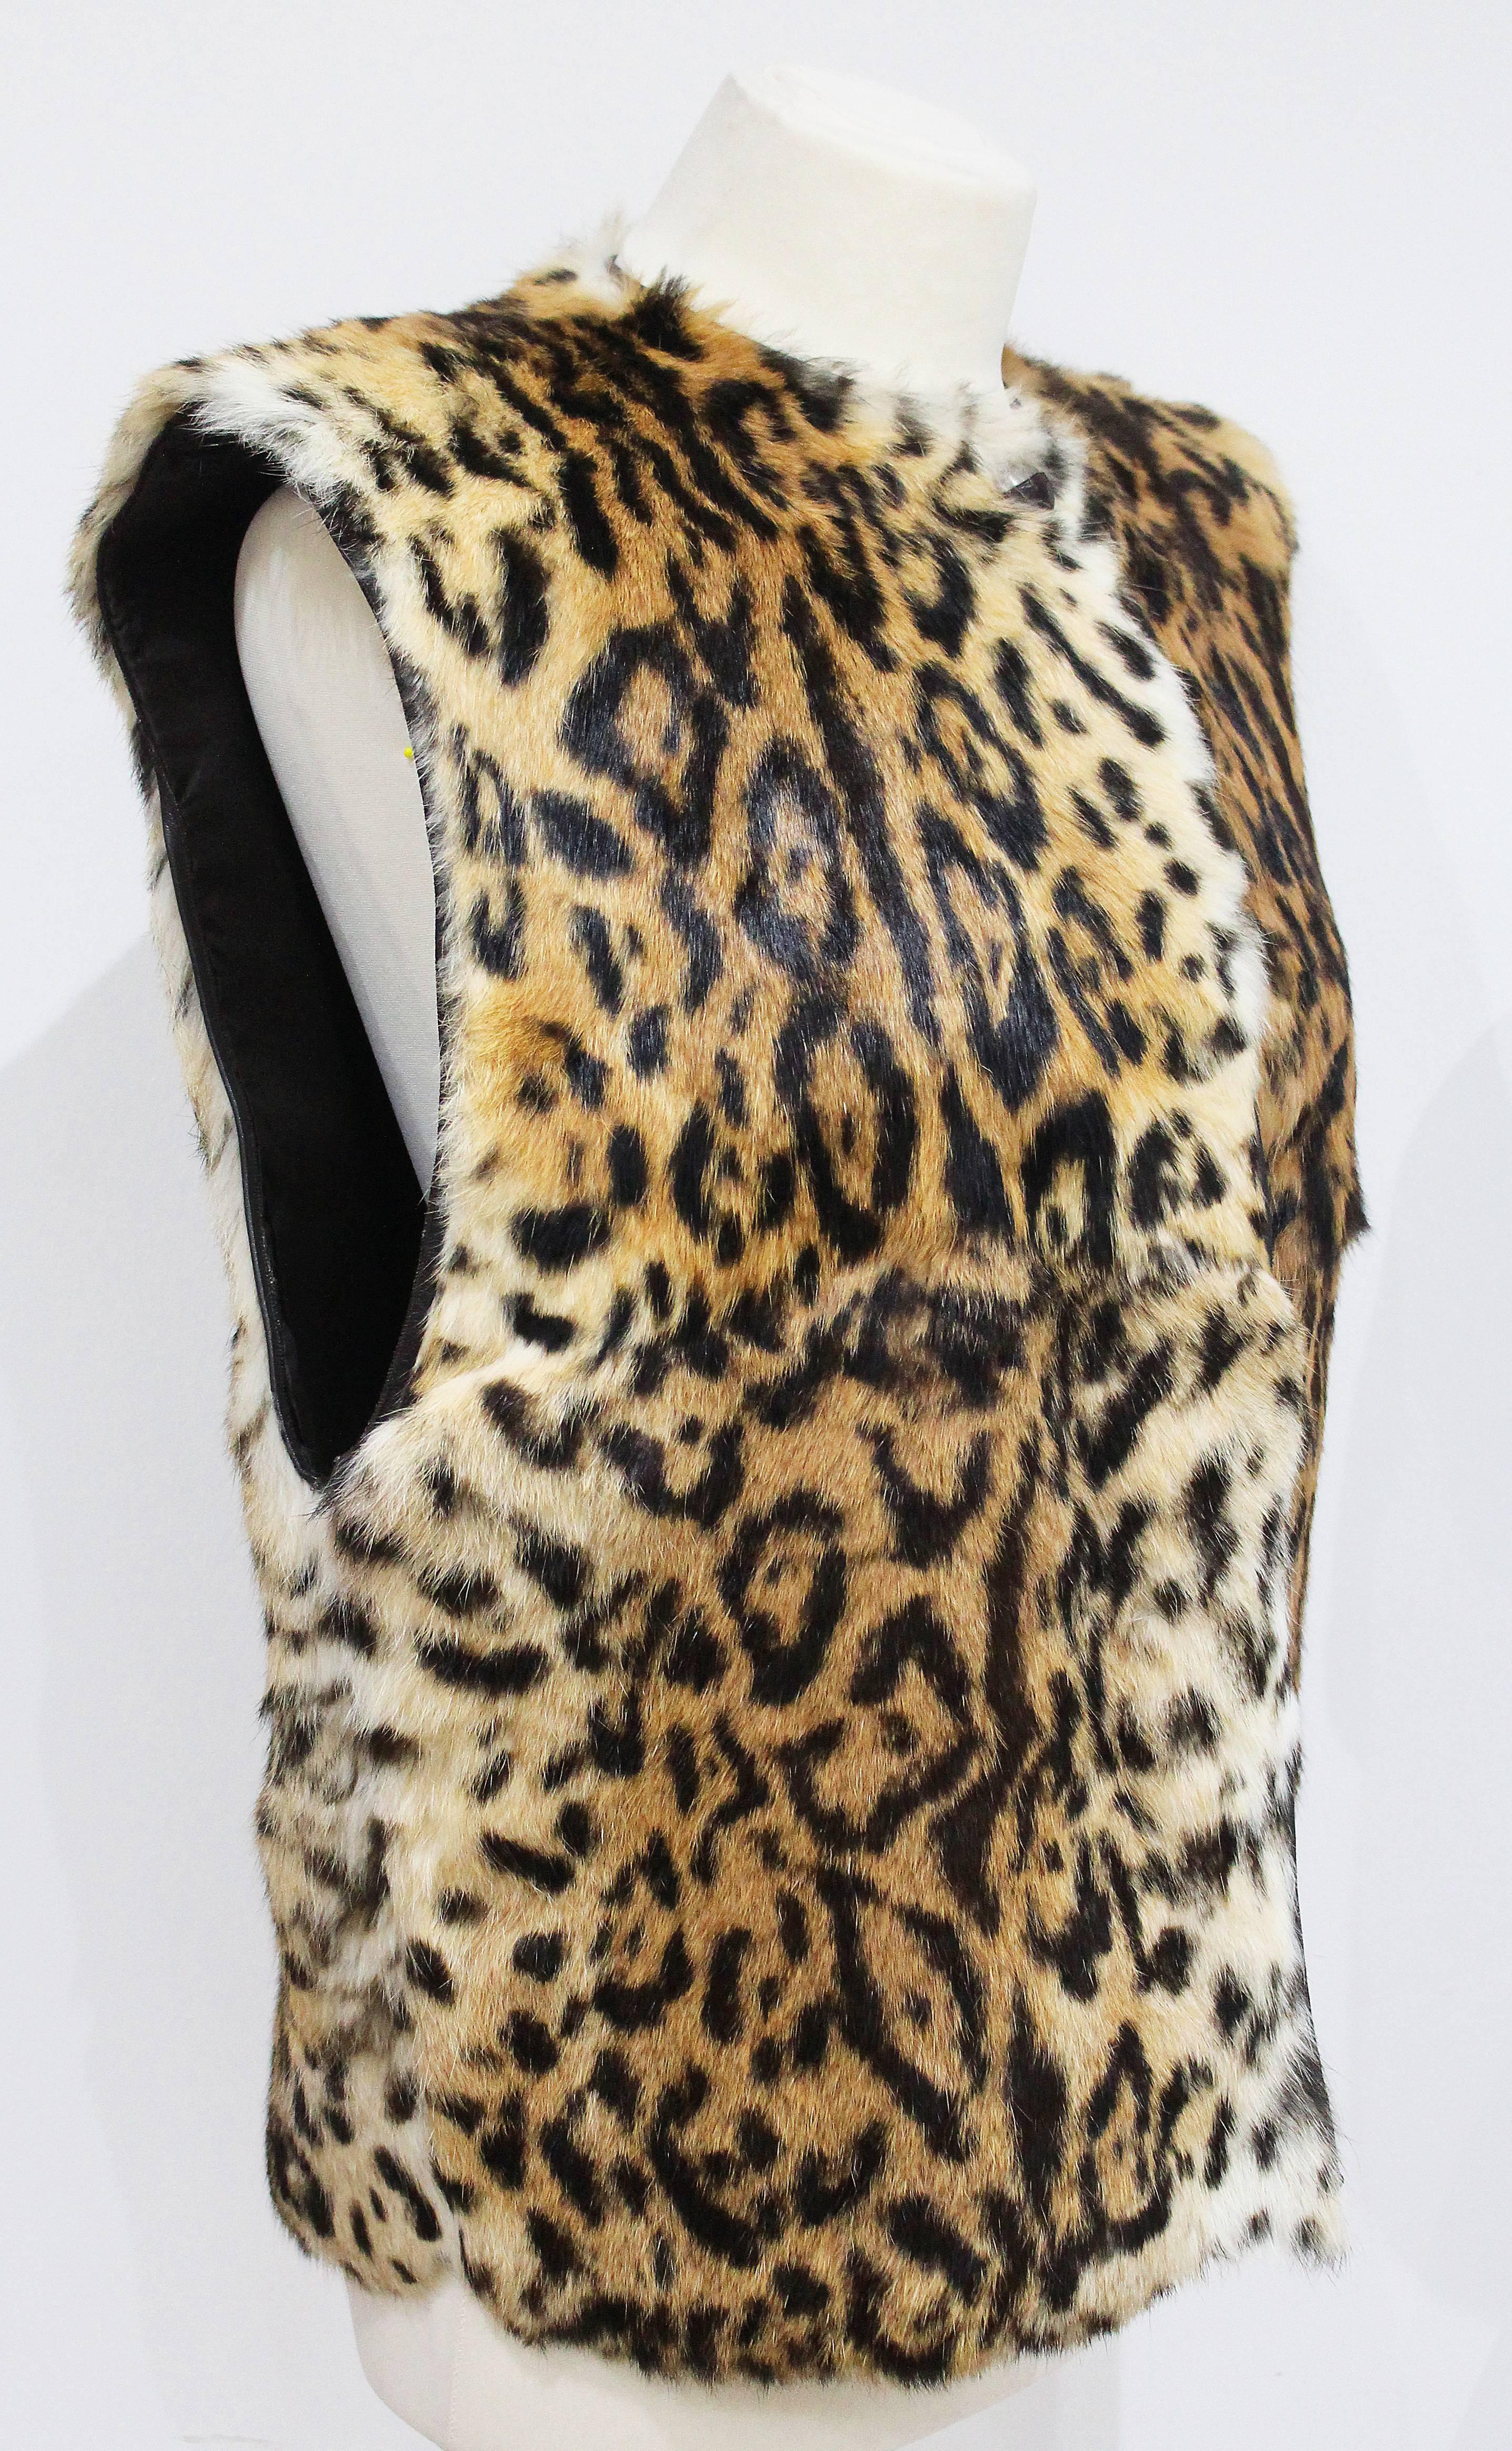 Il s'agit d'un gillet en fourrure de Gianni Versace, imprimé léopard, datant des années 1980. Le gillet est en fourrure de lapin douce et se ferme à l'aide de deux boutons en cuir. La coupe du gillet est très ample et surdimensionnée. 

Moyen/Large